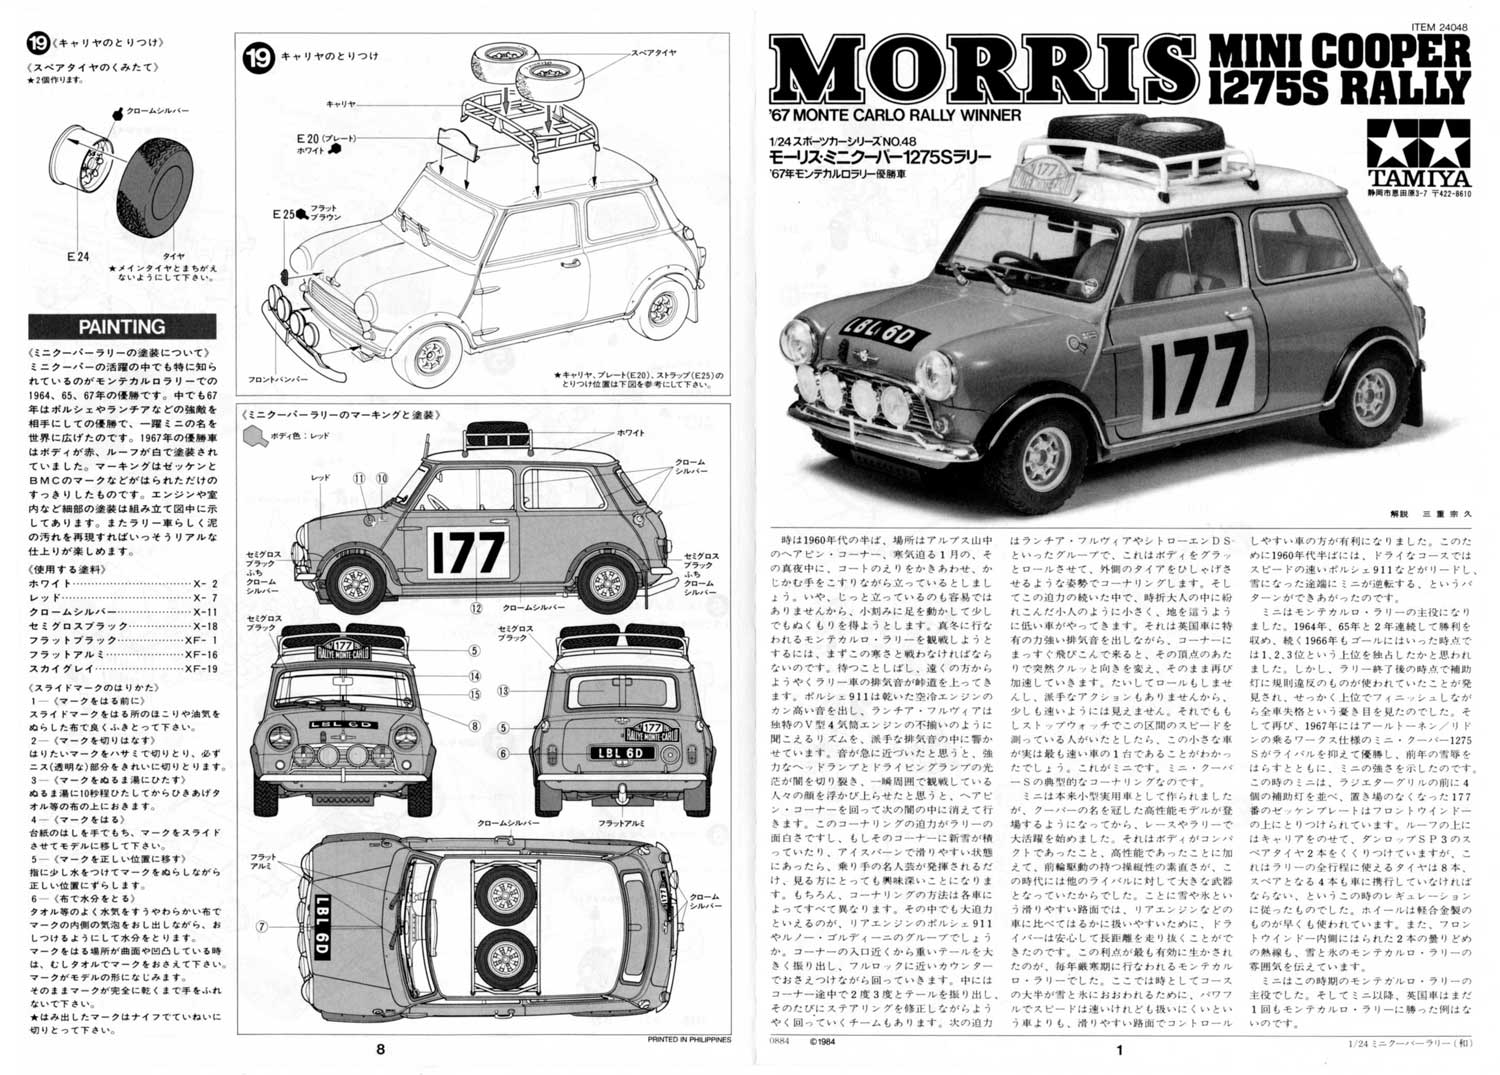 タミヤ 1/24 スポーツカーシリーズ・モーリス・ミニクーパー1275S